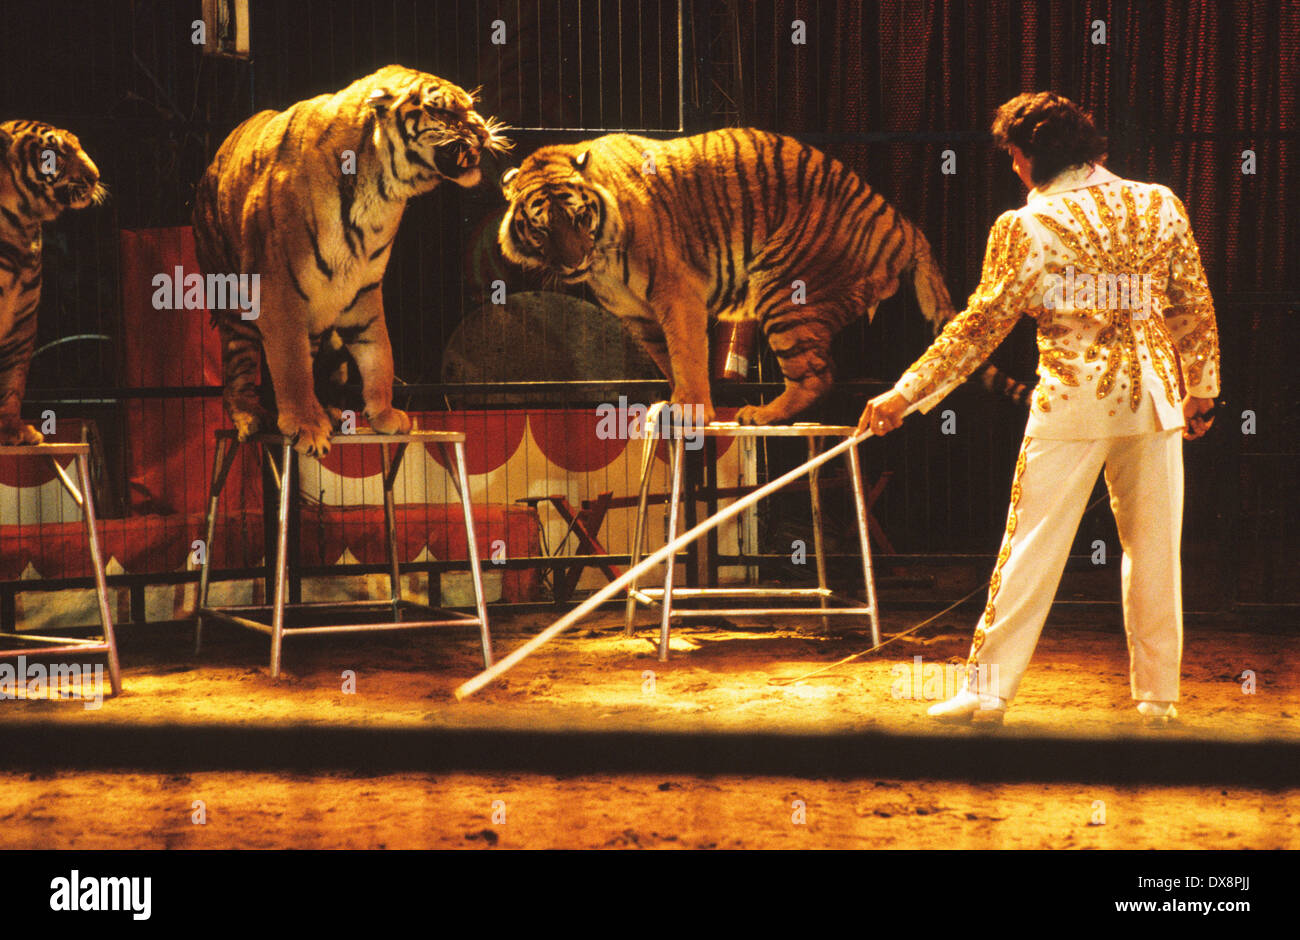 Цирк бенгальские тигры. Тигр в цирке. Цирк про бенгальских тигров. Большие кошки в цирке.